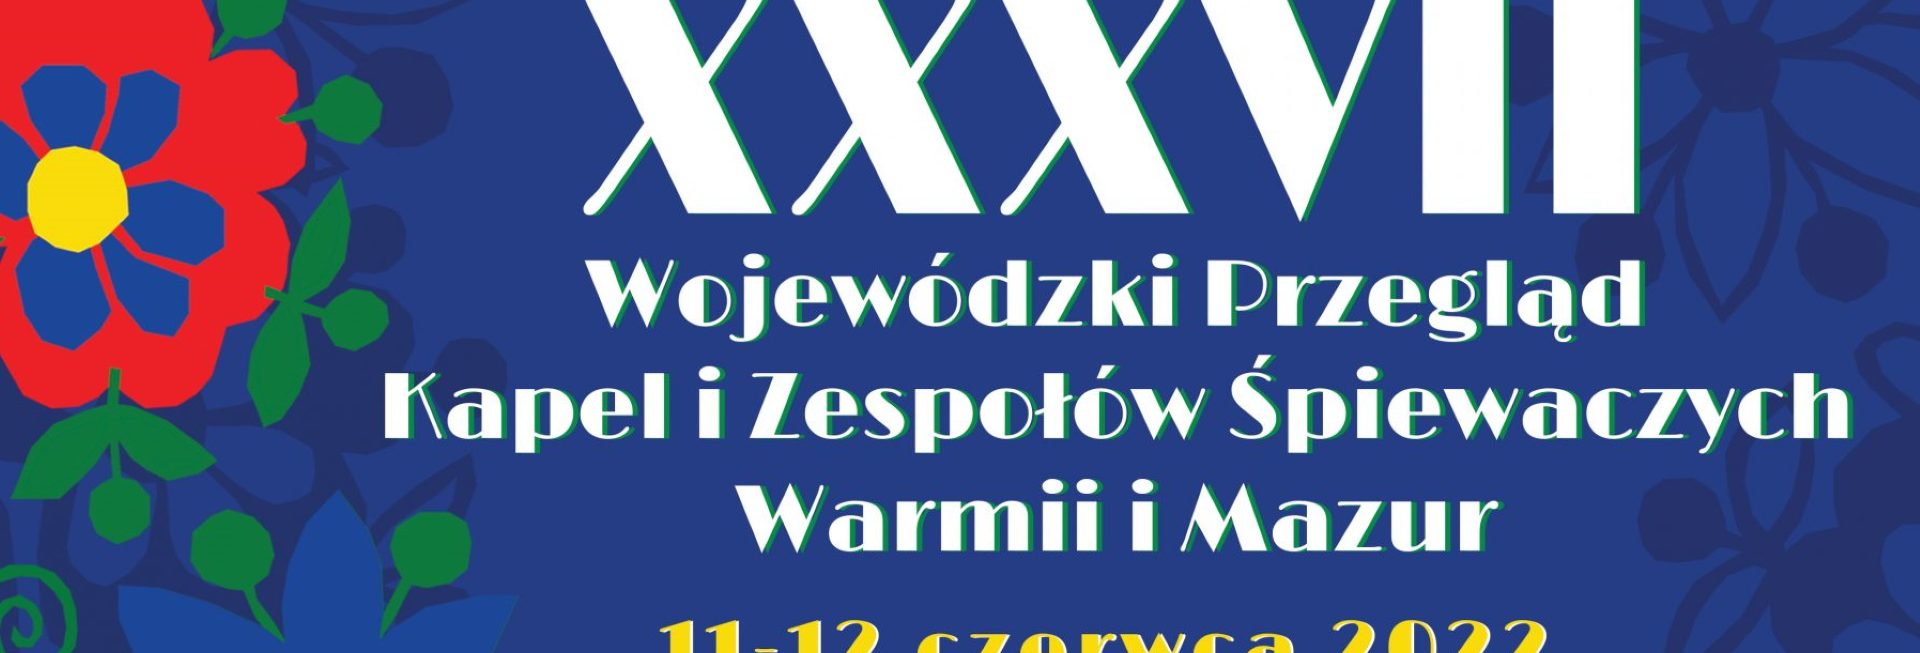 Plakat graficzny zapraszający do Jezioran na 37. edycję Wojewódzkiego Przeglądu Kapel i Zespołów Śpiewaczych Warmii i Mazur Jeziorany 2022.